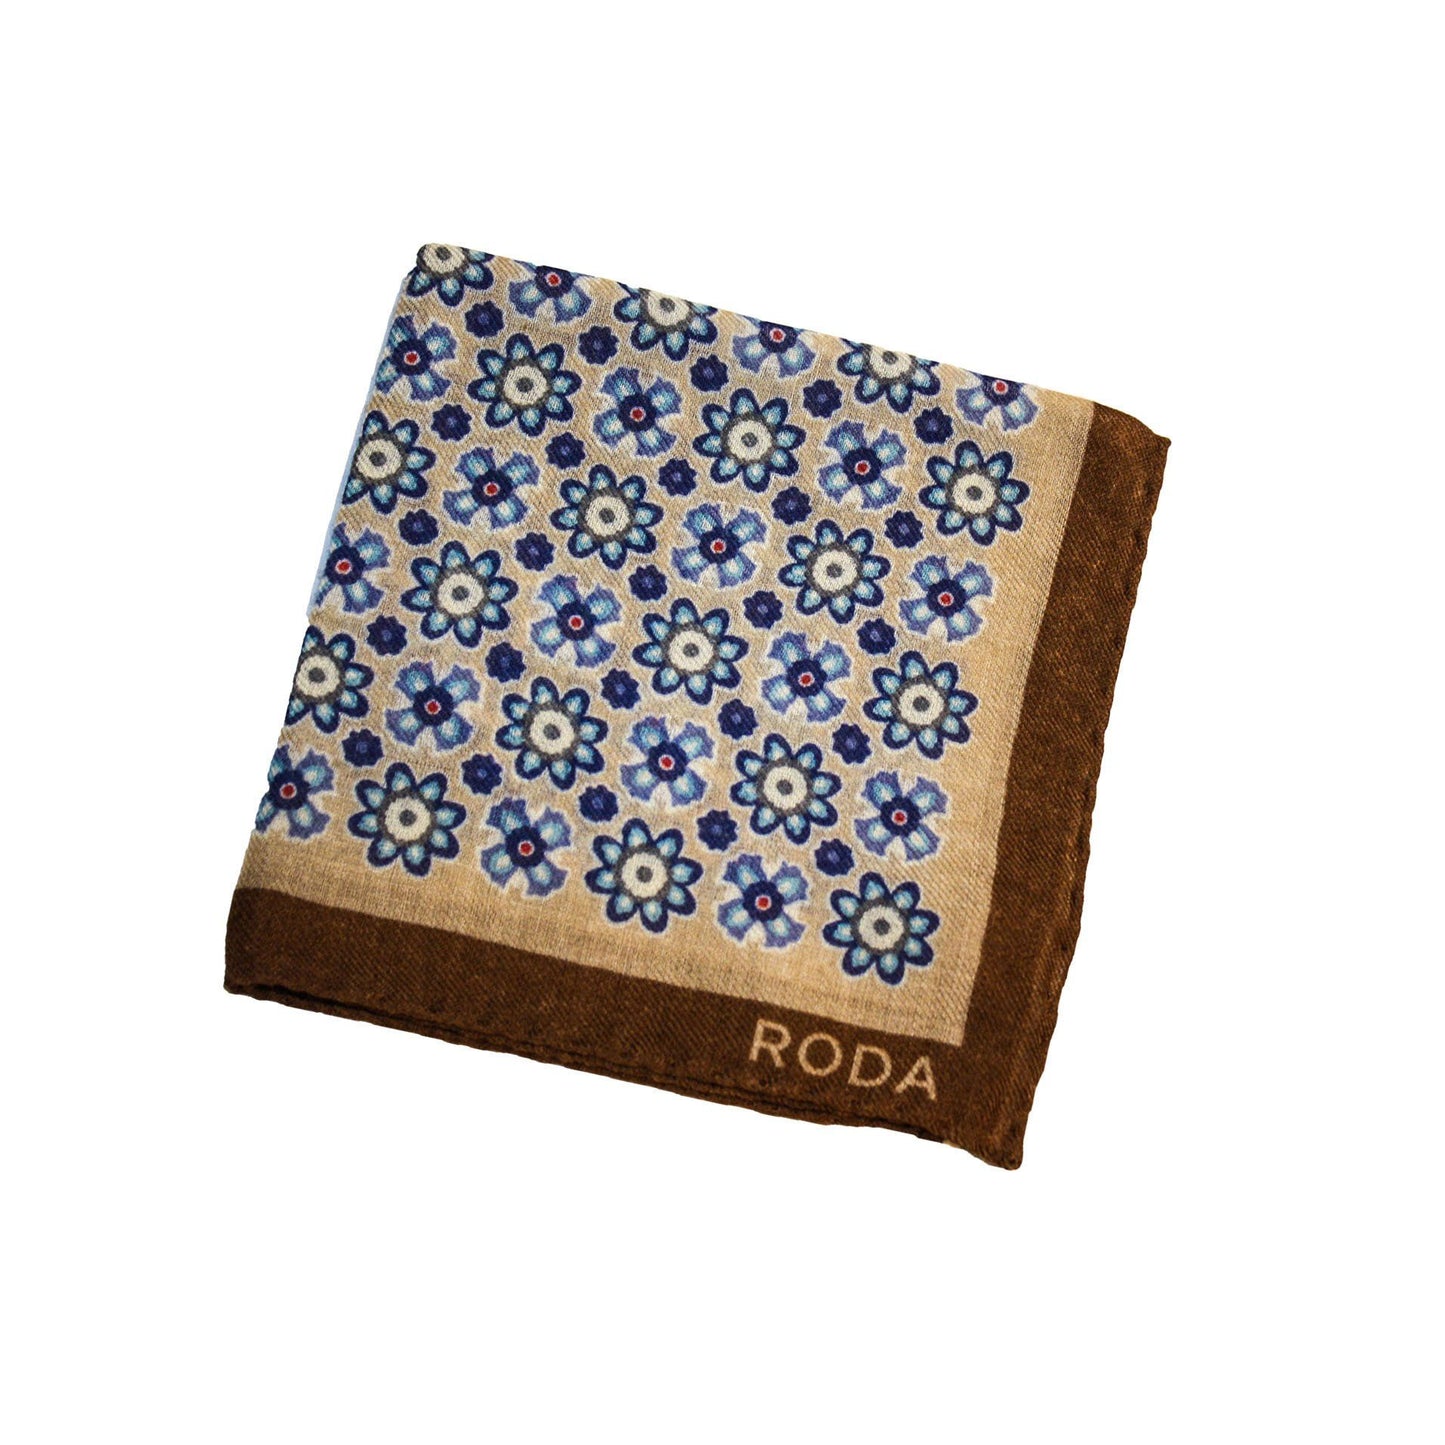 Pocket Square - Pocket Square From RODA